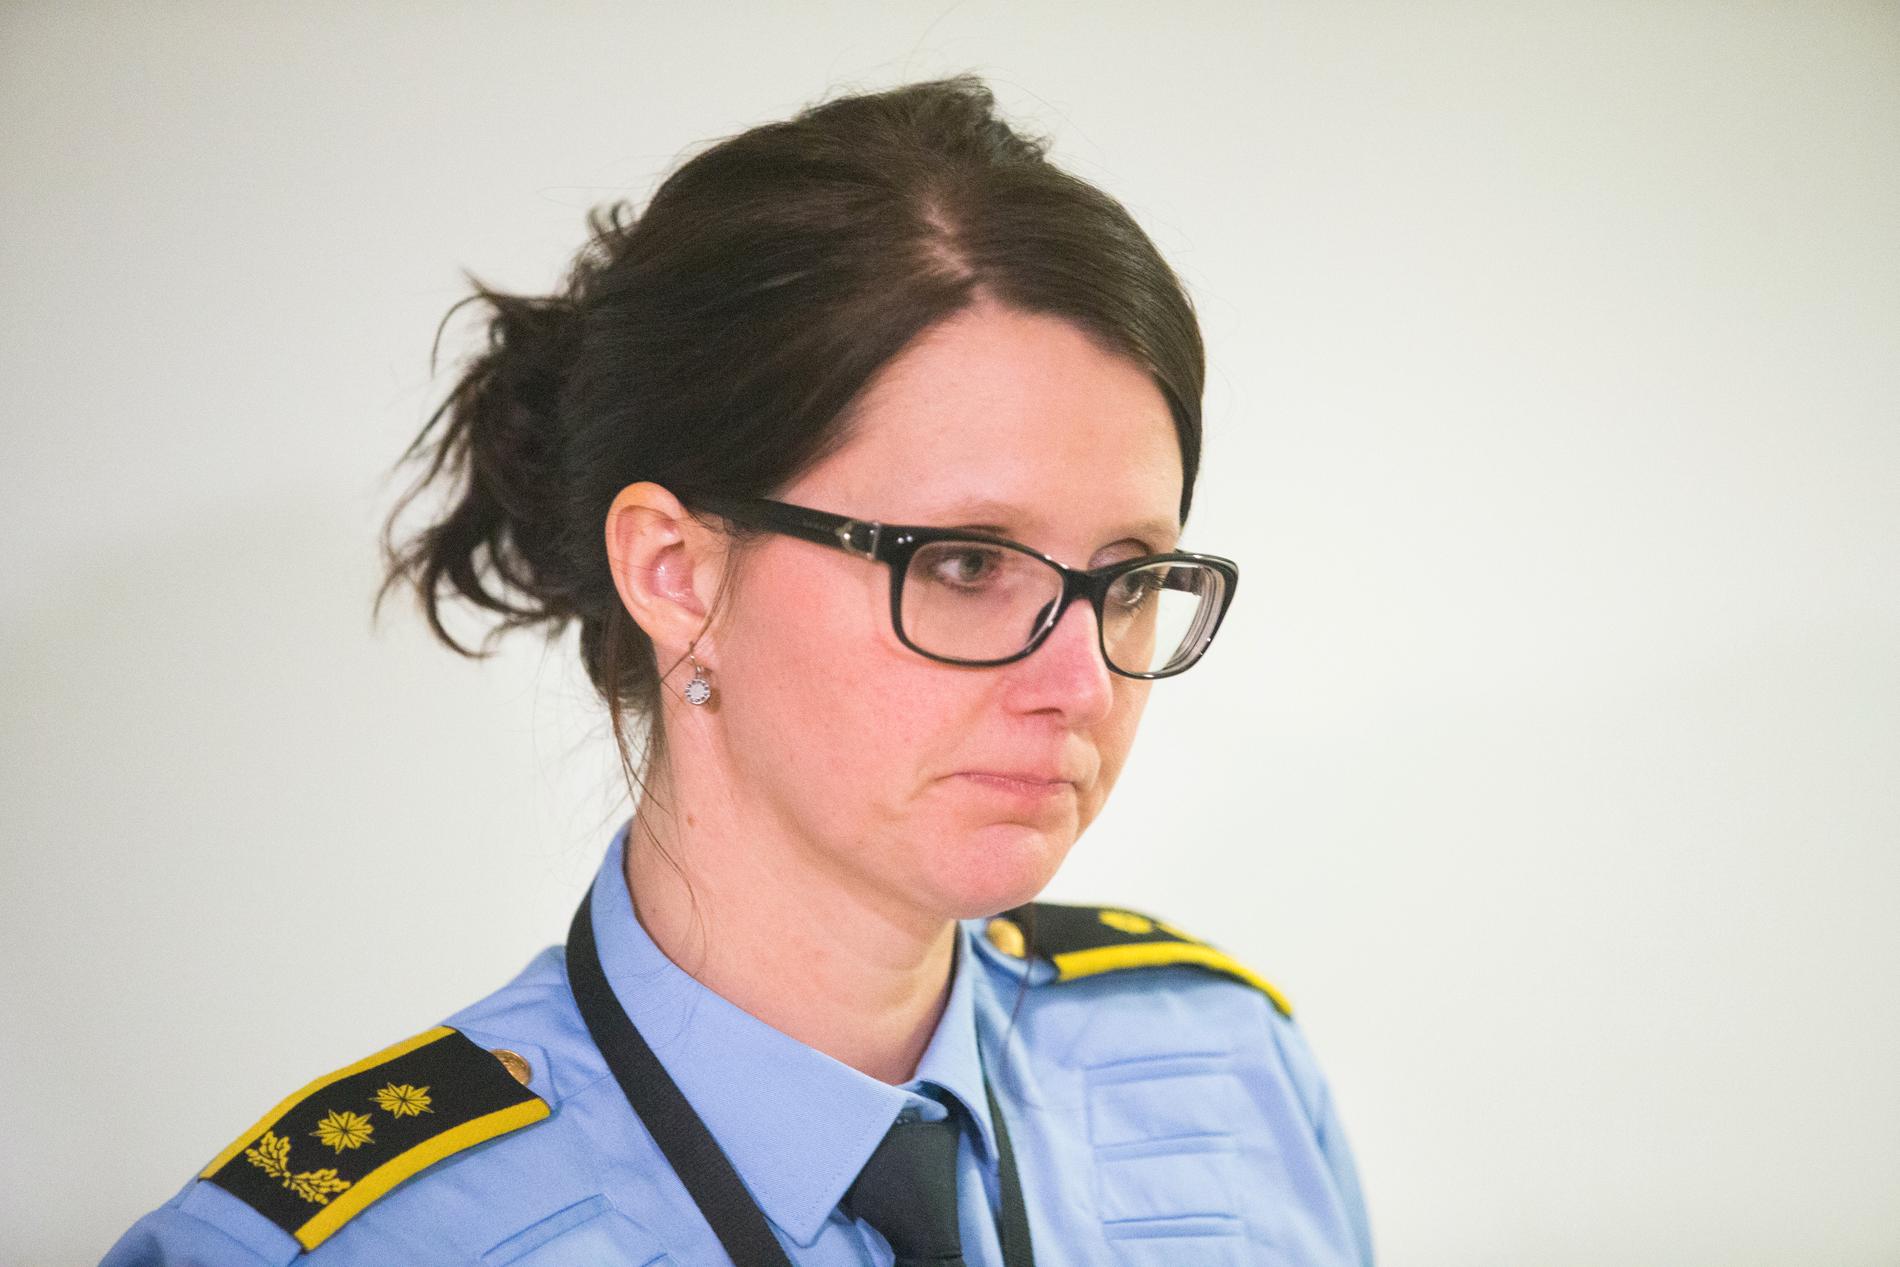  Politiadvokat Julie Dalsveen på pressekonferansen i Brumunddal fredag kveld. Politiet har pågrepet ektemannen til den savnede Janne Jemtland og siktet ham for drap.  